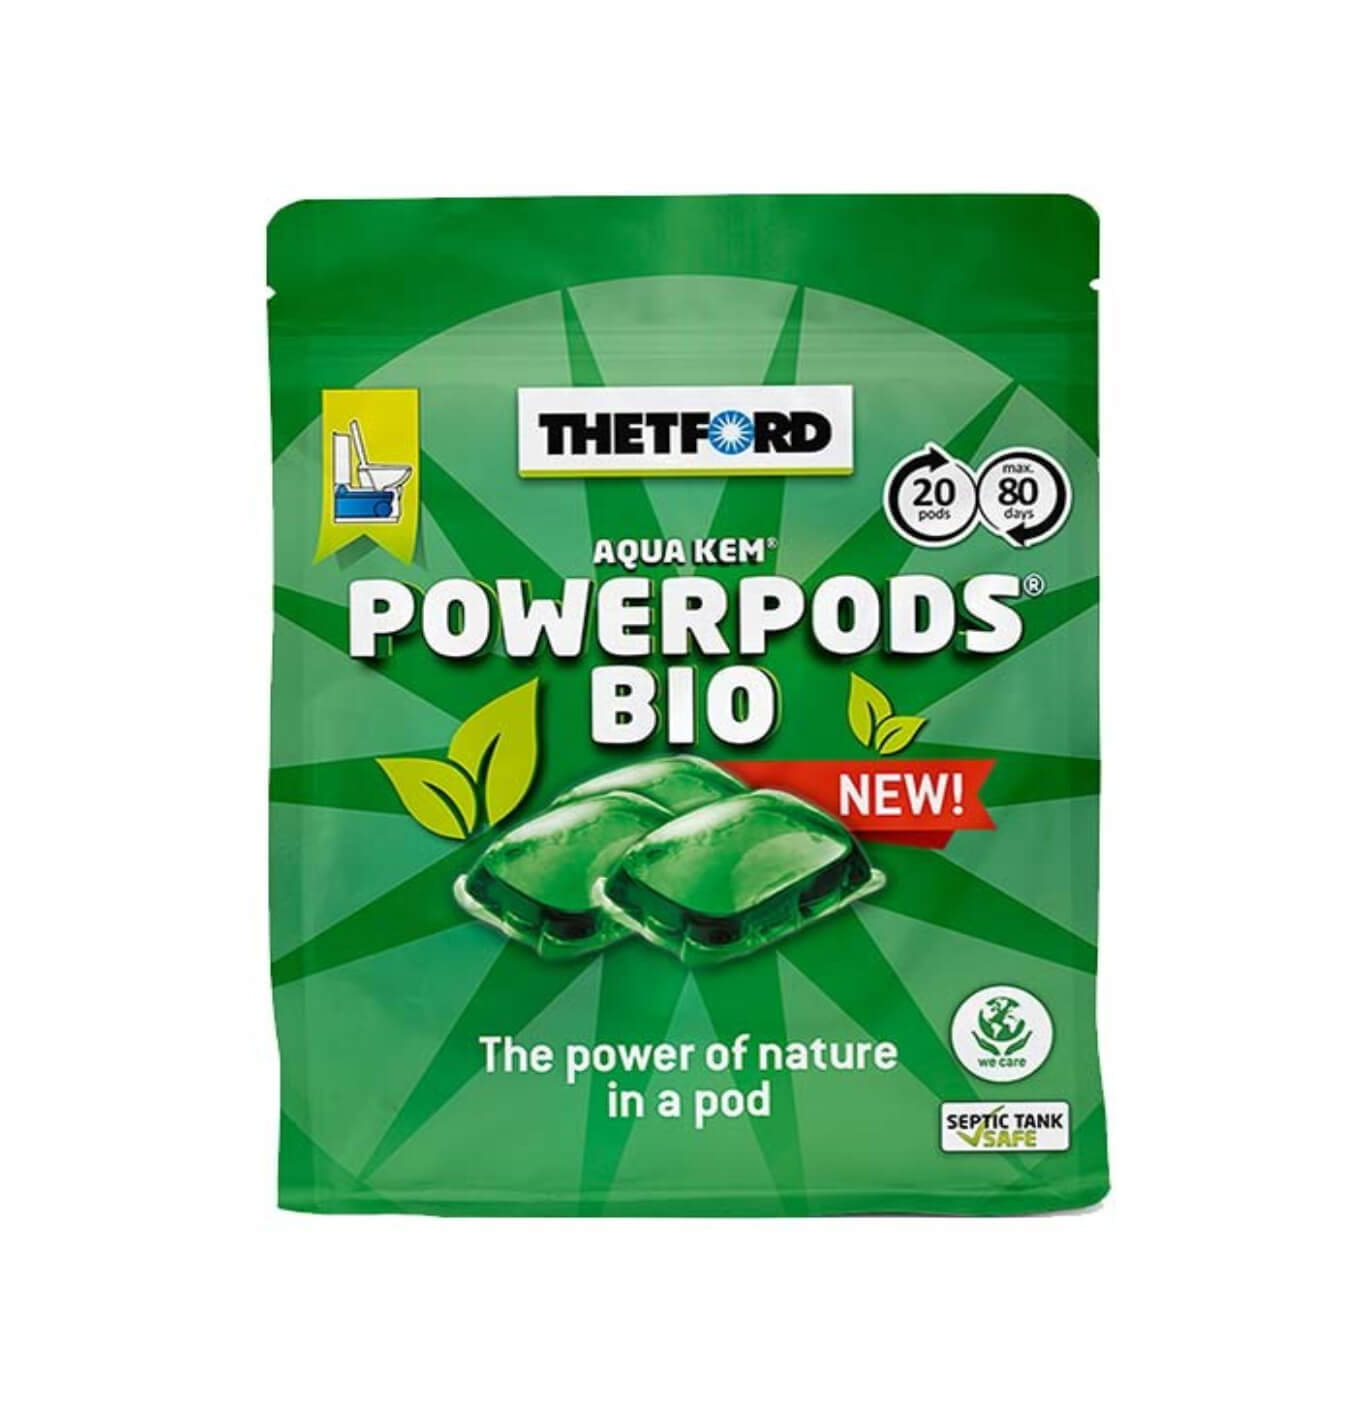 Thetford Aqua Kem PowerPods Bio Green Pods | 20 Pods